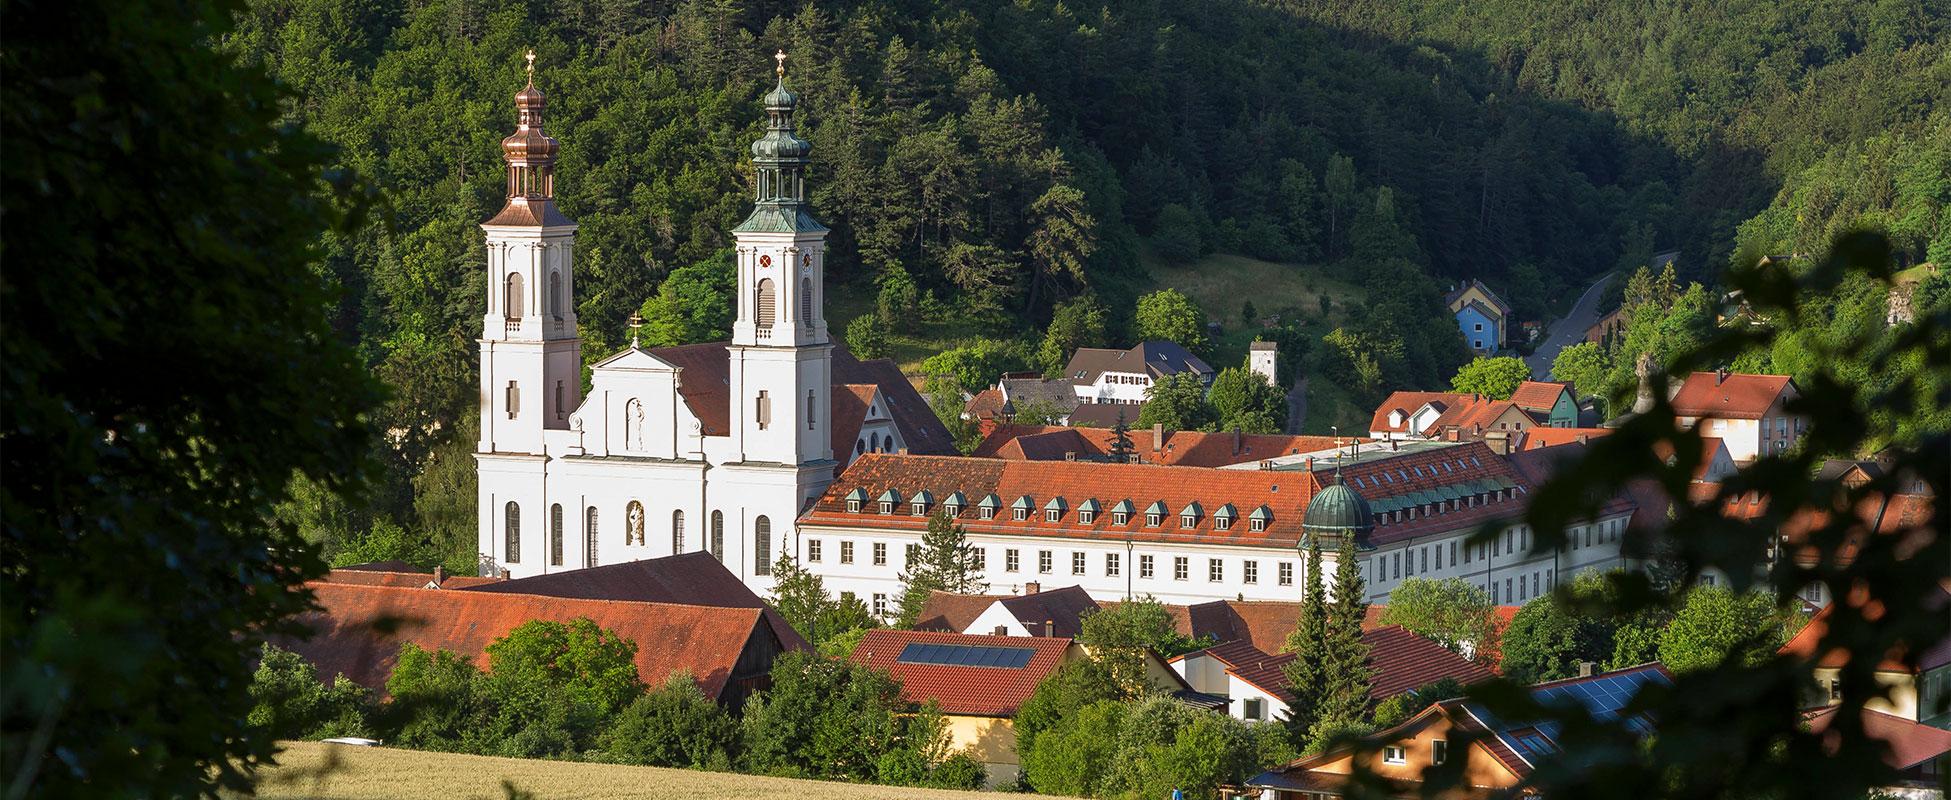 Großes Kloster mit zwei Türmen und viel Wald im Hintergrund